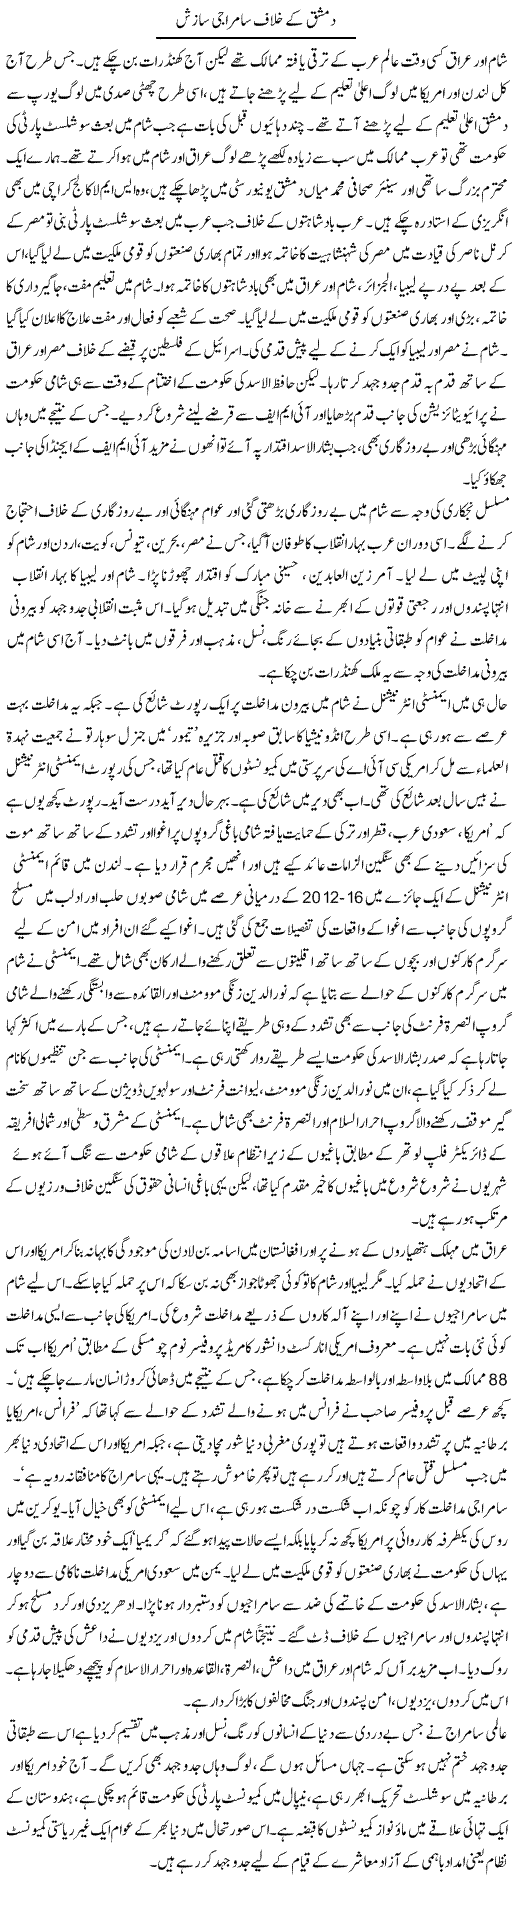 Dimashq ke khilaaf samraji saazish | Zubair Rehman | Daily Urdu Columns